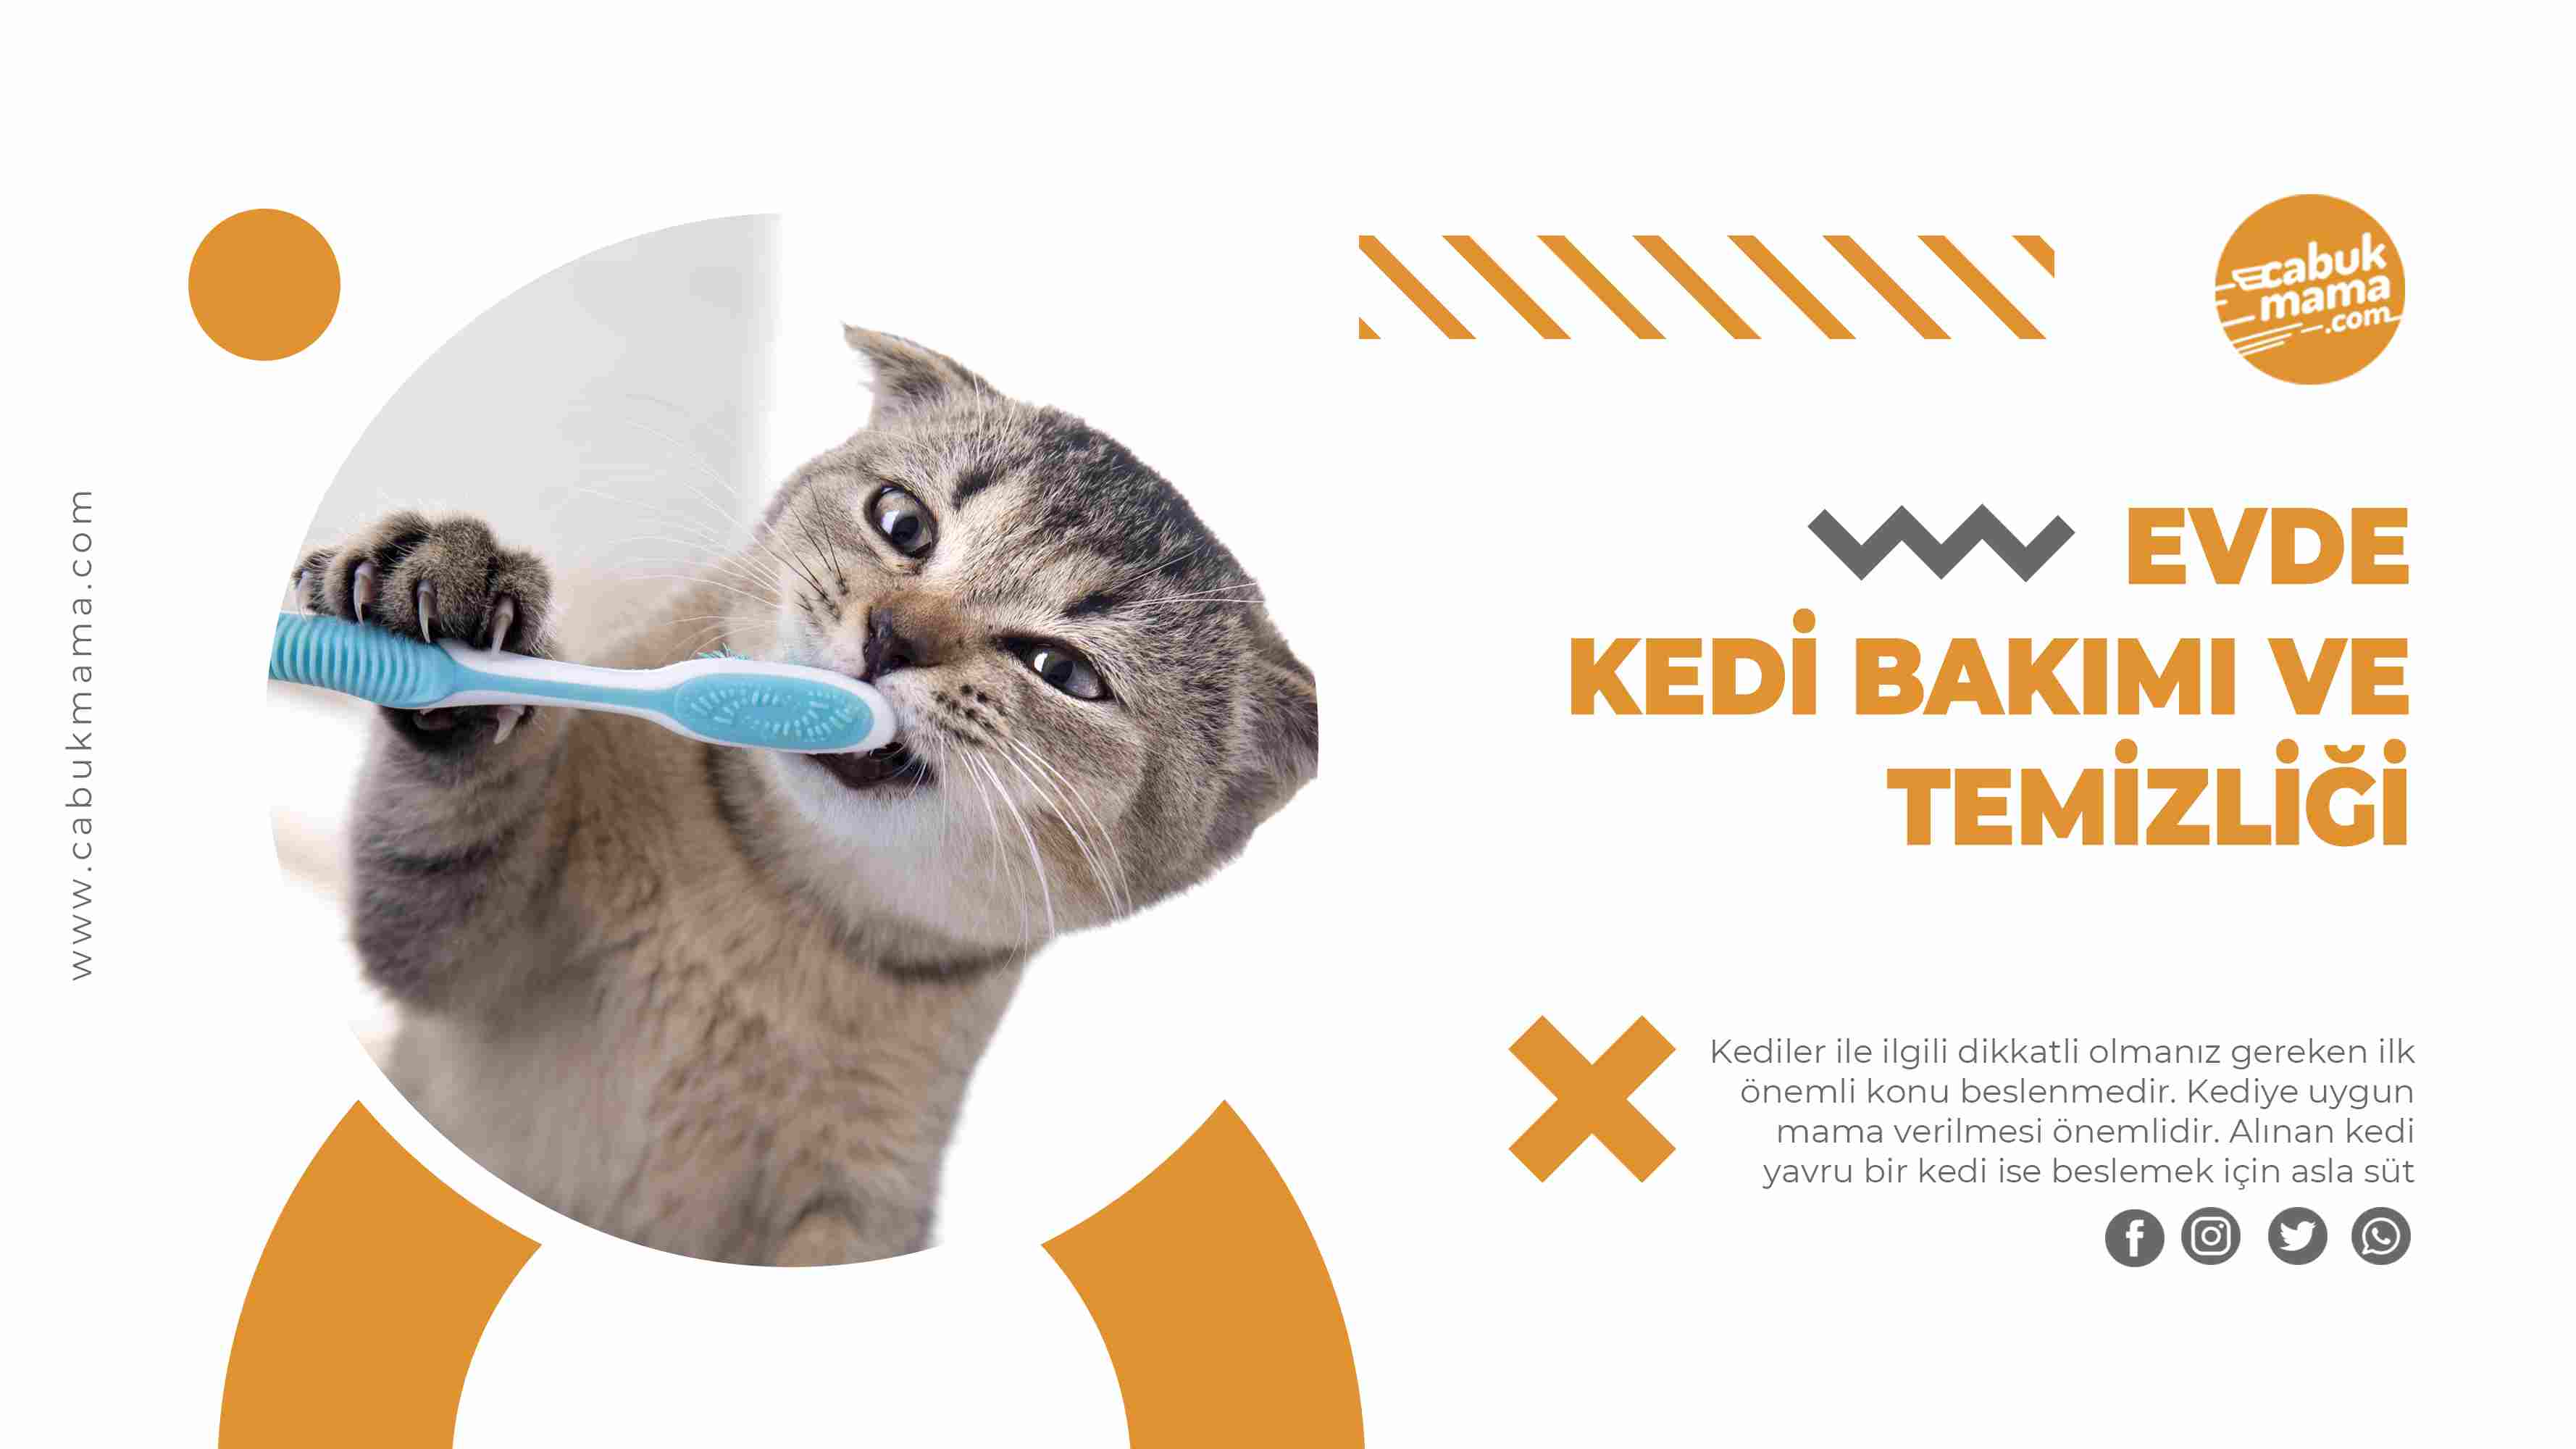 Kedi bakımı ve temizliği